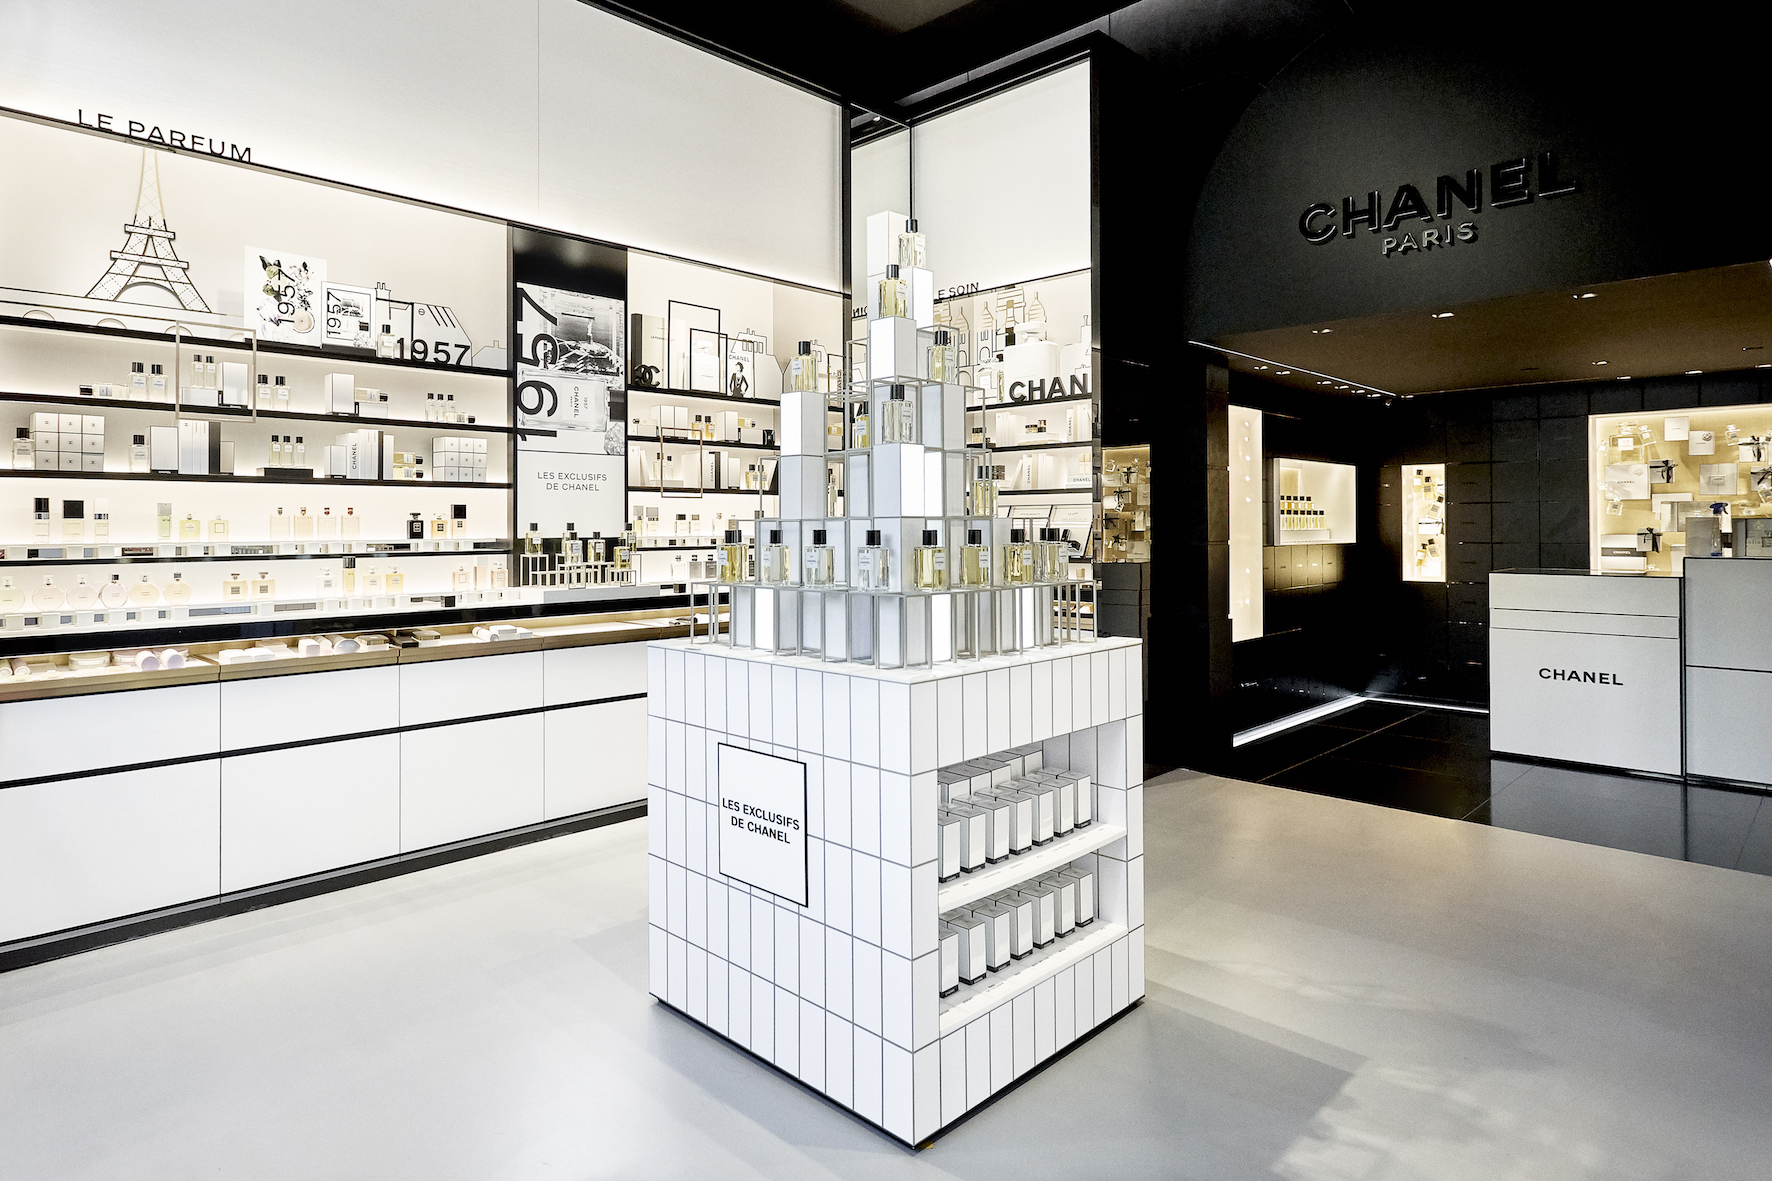 Магазин шанель духи. Chanel Perfume Boutique. Шанель бутиковый Парфюм Париж. Коко Шанель Париж. Париж парфюмерия бутик Chanel.